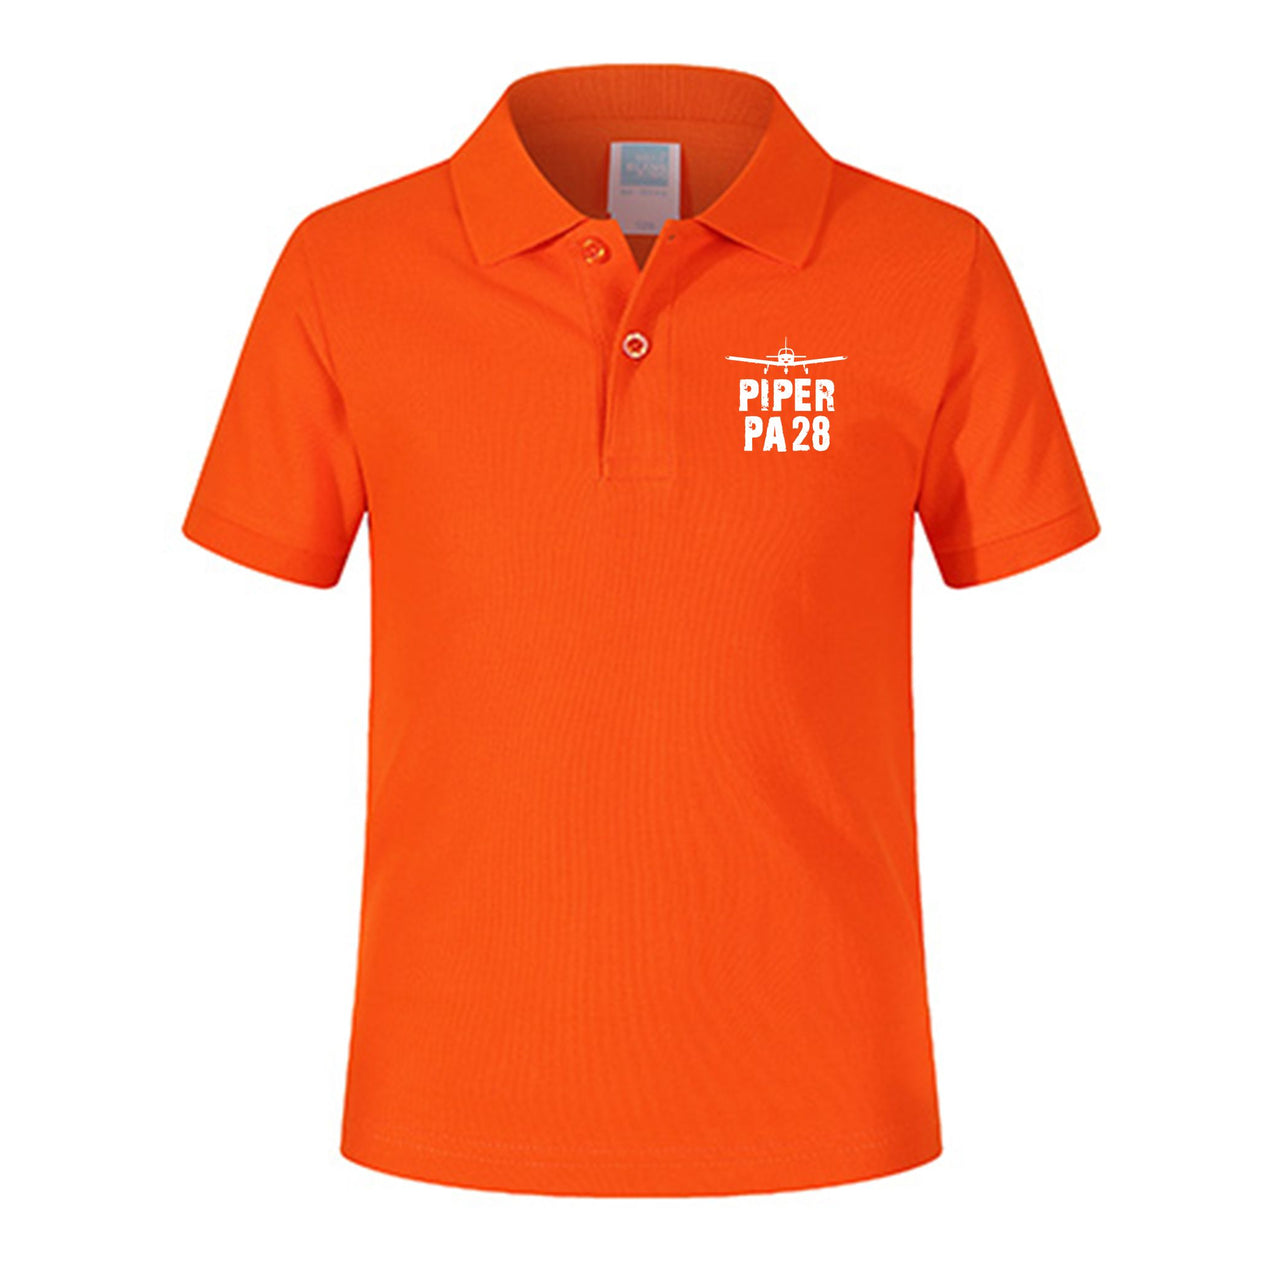 Piper PA28 & Plane Designed Children Polo T-Shirts